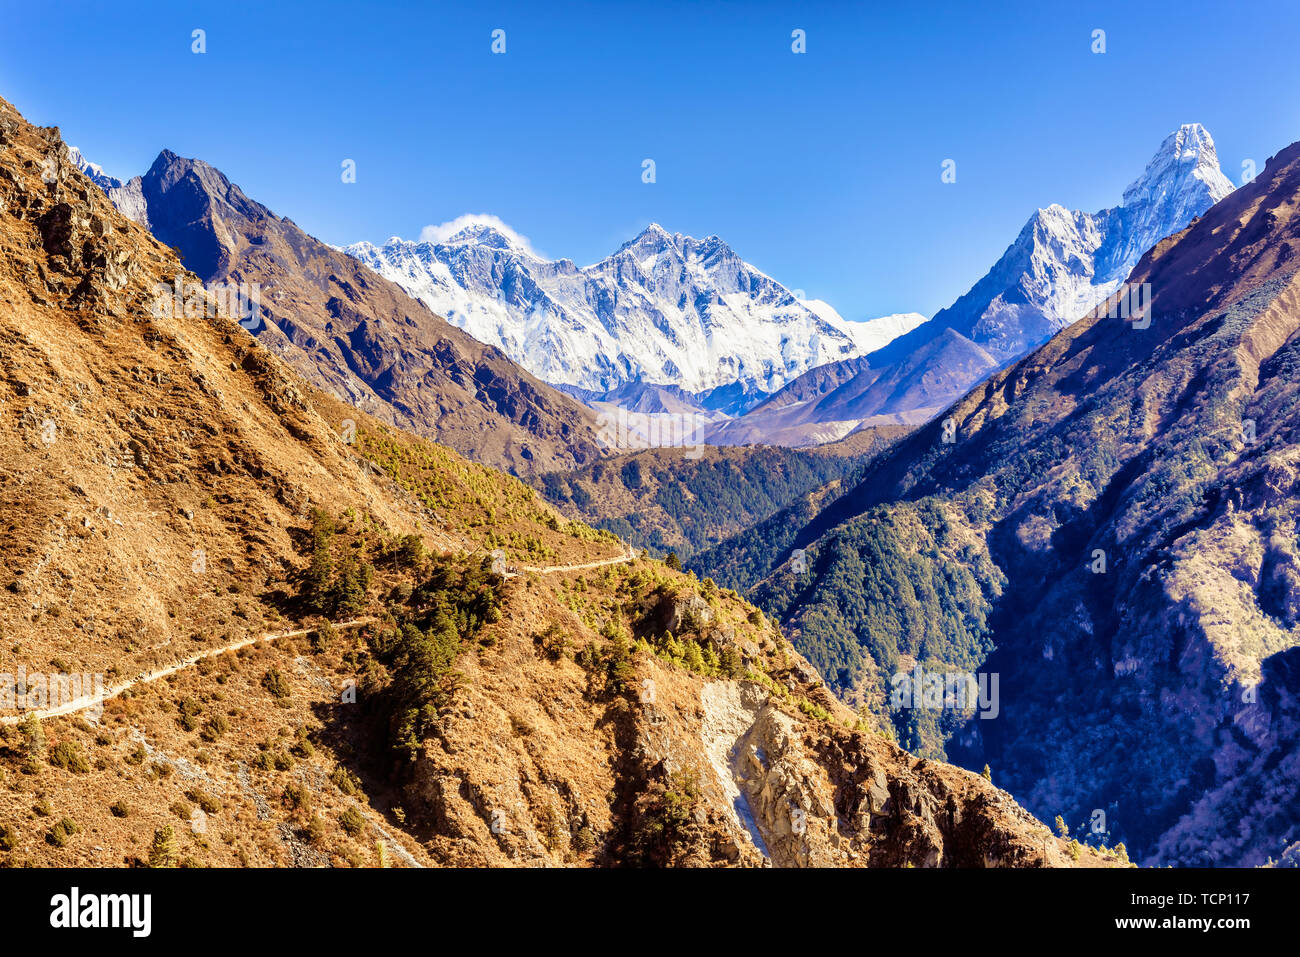 Vue panoramique de Mt. Everest, Lhotse, Nuptse et l'Ama Dablam sur la randonnée à vélo à partir de Namche Bazar à Tengboche et sur le chemin de l'Everest Camp de Base Banque D'Images